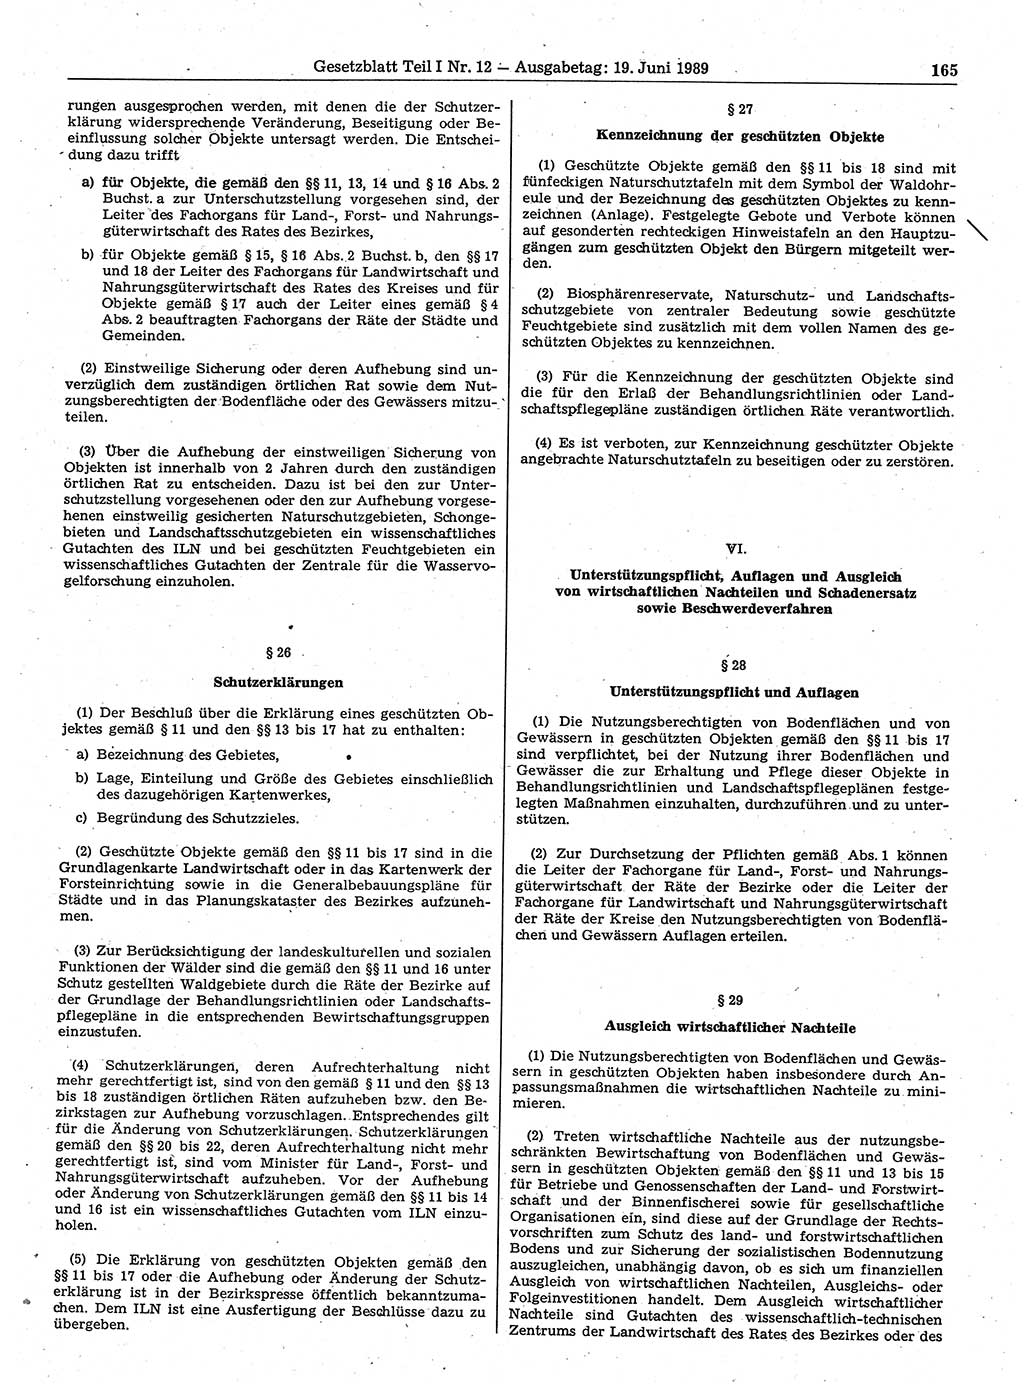 Gesetzblatt (GBl.) der Deutschen Demokratischen Republik (DDR) Teil Ⅰ 1989, Seite 165 (GBl. DDR Ⅰ 1989, S. 165)